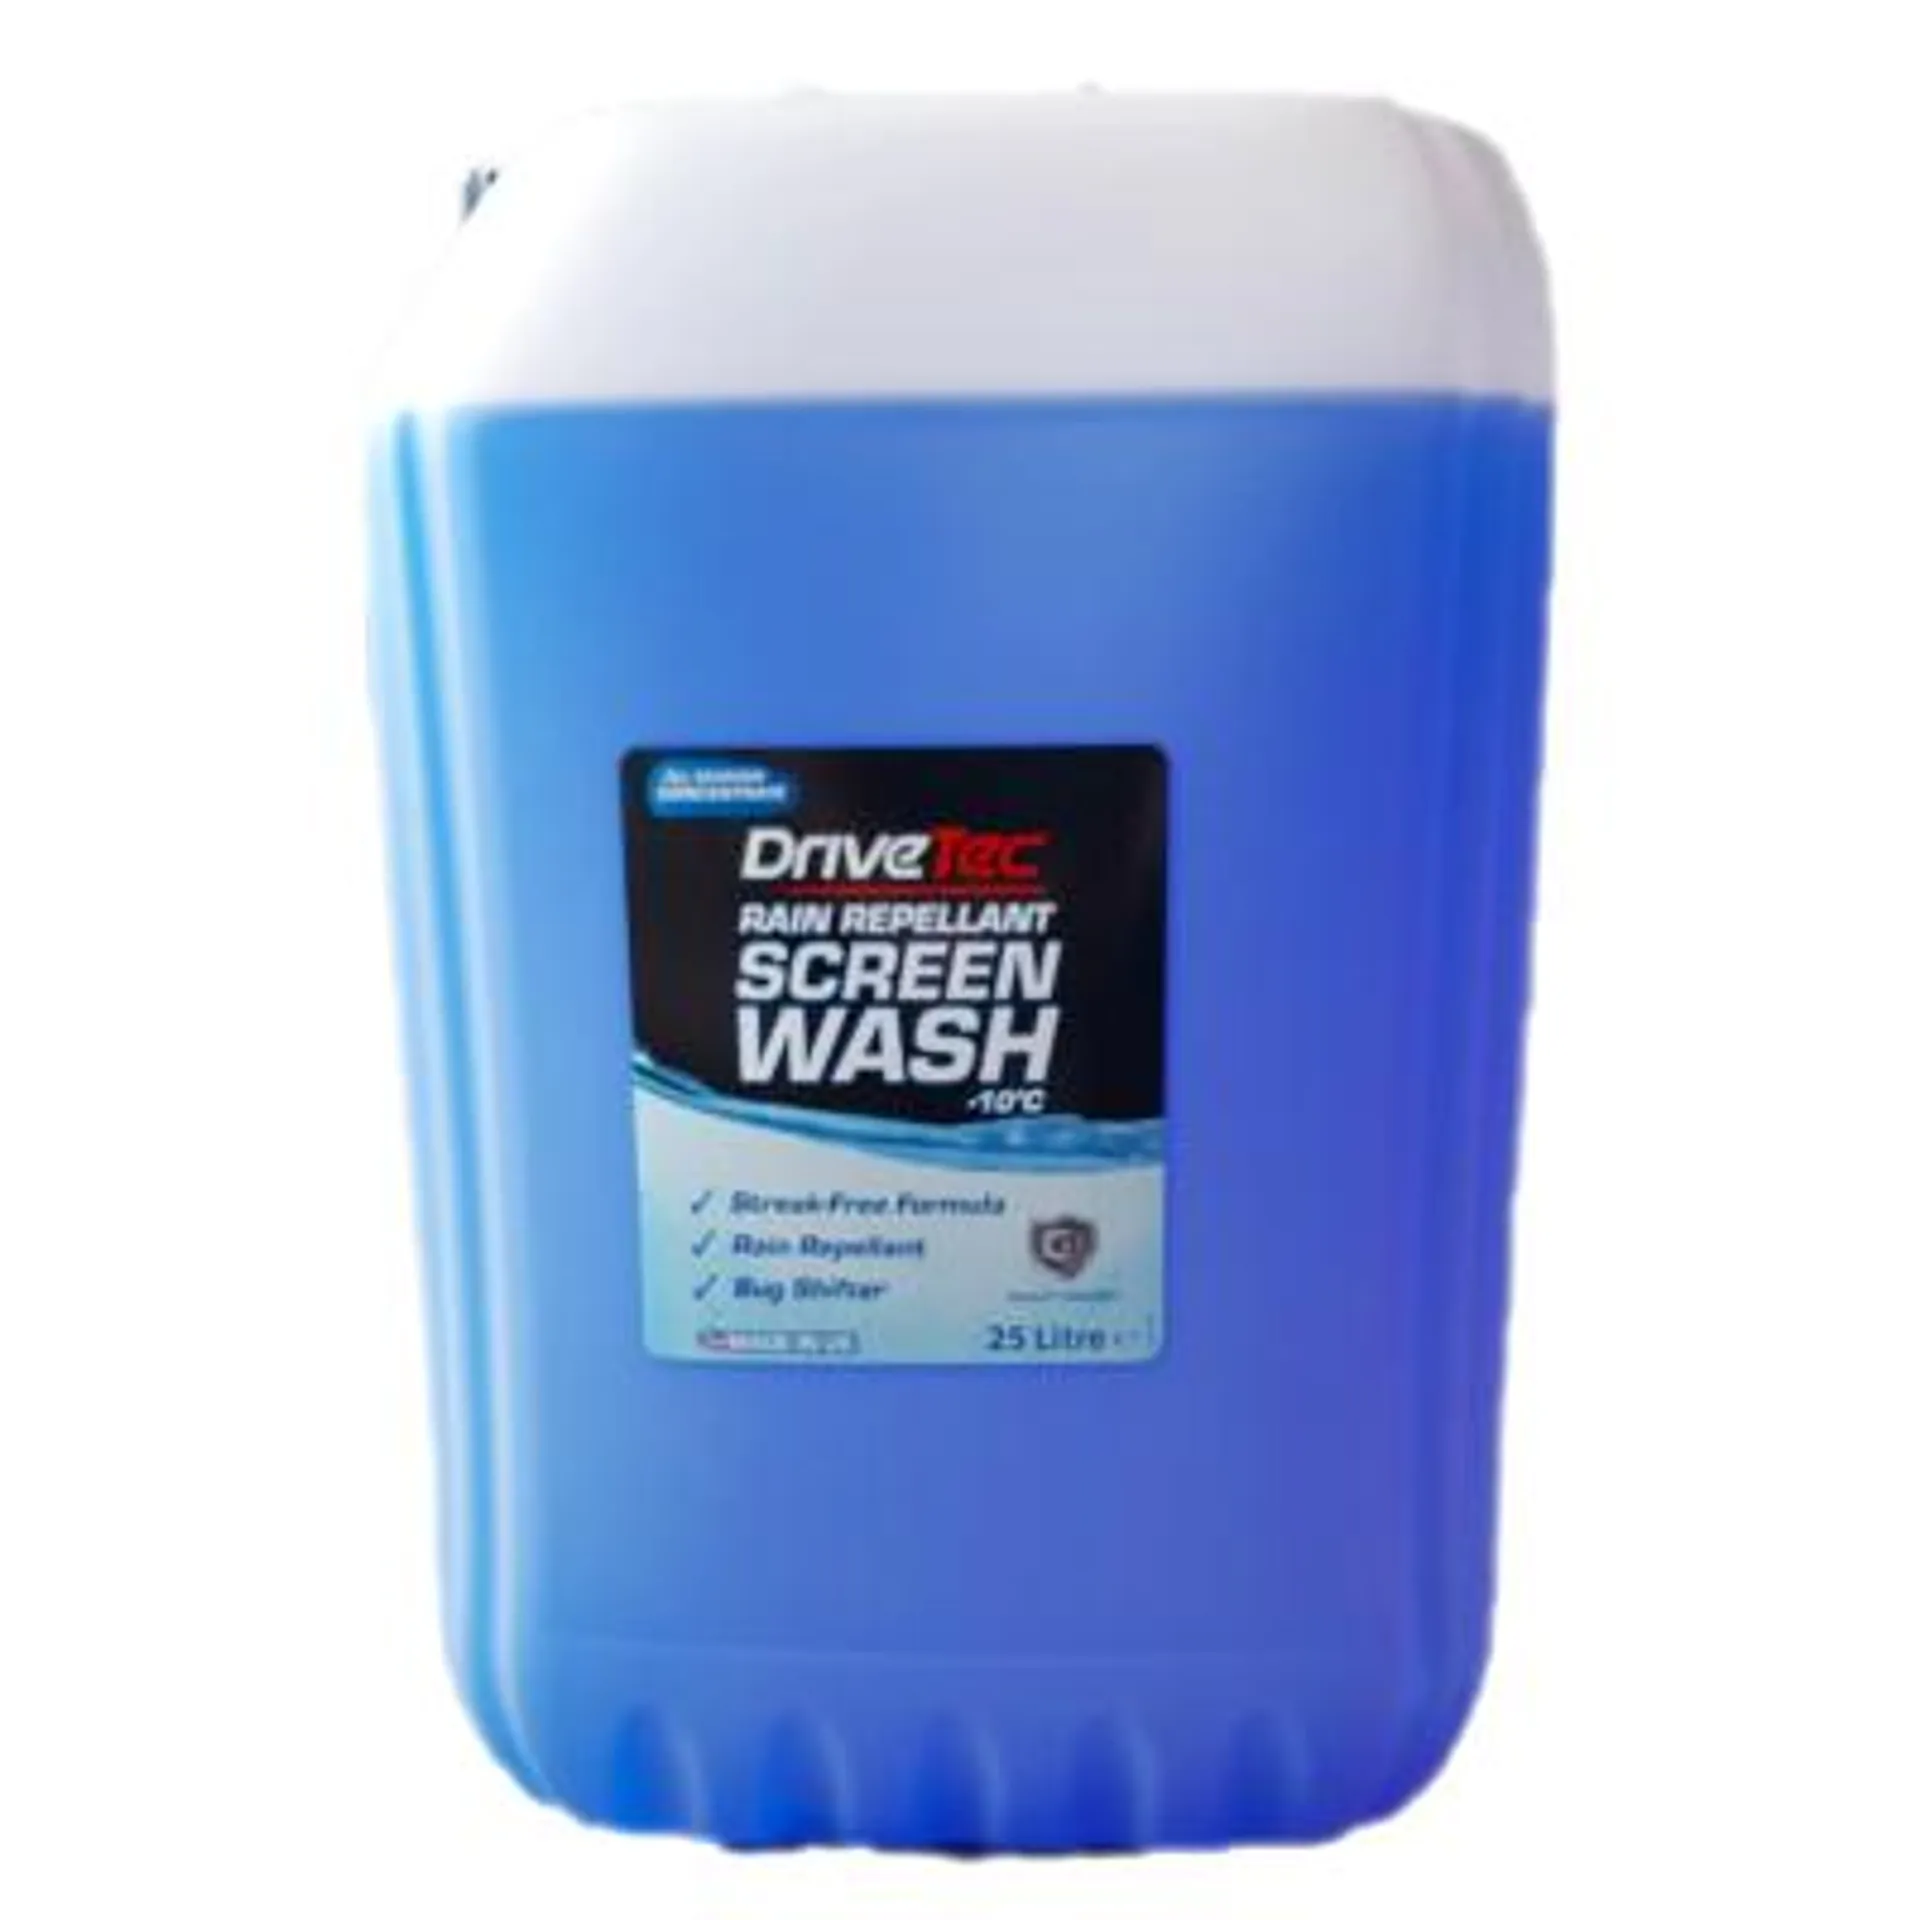 drivetec screen wash + rain repellent concentrate